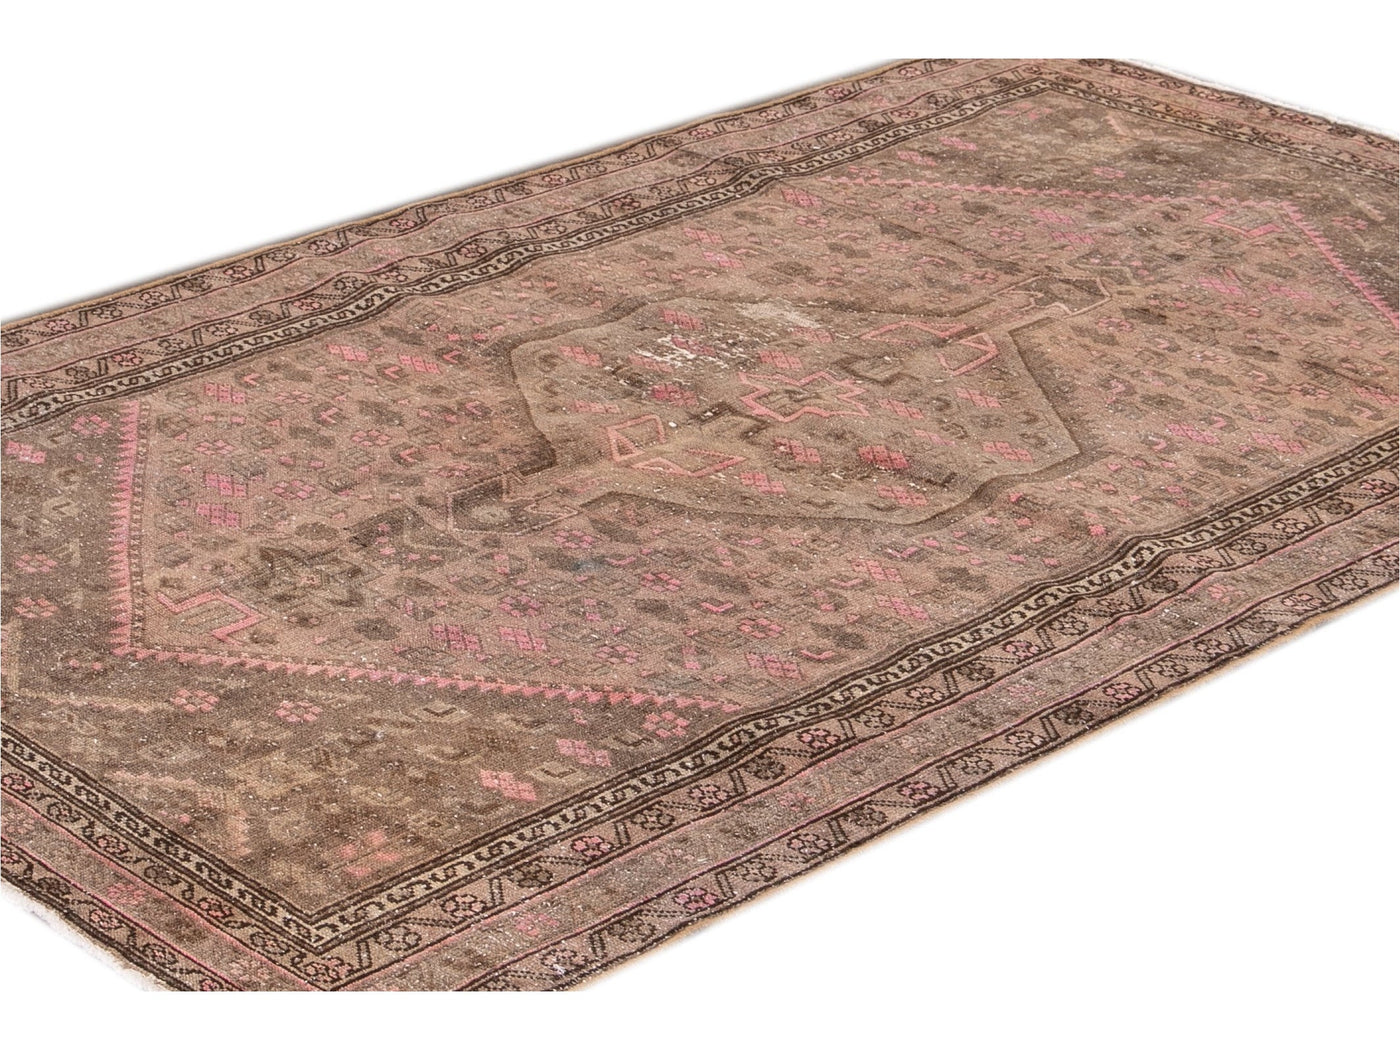 Vintage Persian Distressed Brown and Pink Handmade Wool Rug